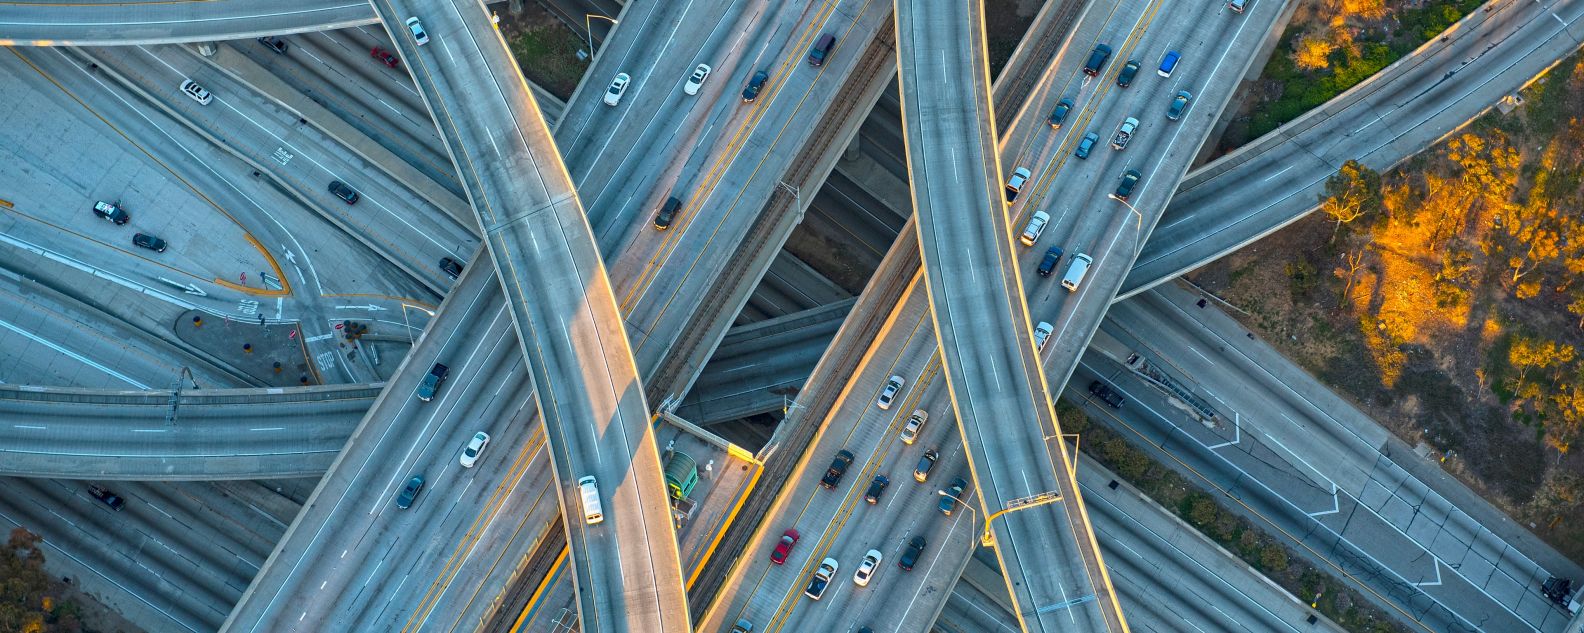 Vista aérea de un intercambiador de autopistas en un paisaje urbano